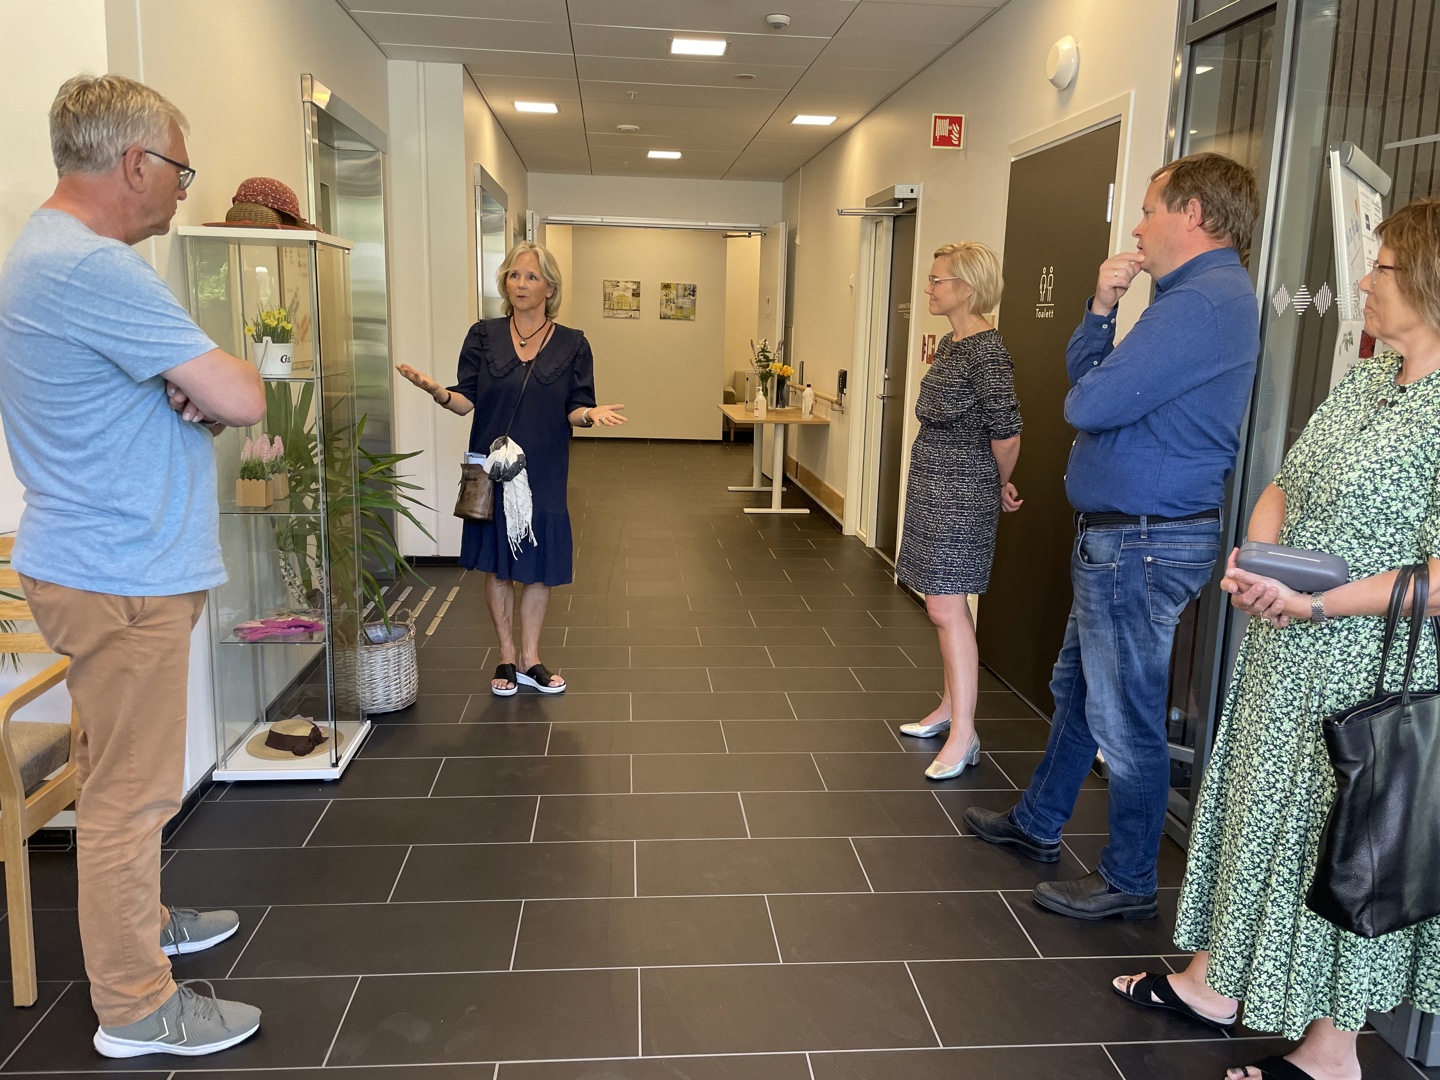 Virksomhetsleder ved Mule sykehjem Kristin Knudsen fortalte om sykehjemmet og planene for utvidelse, blant annet med felles legevakt for Porsgrunn og Bamble